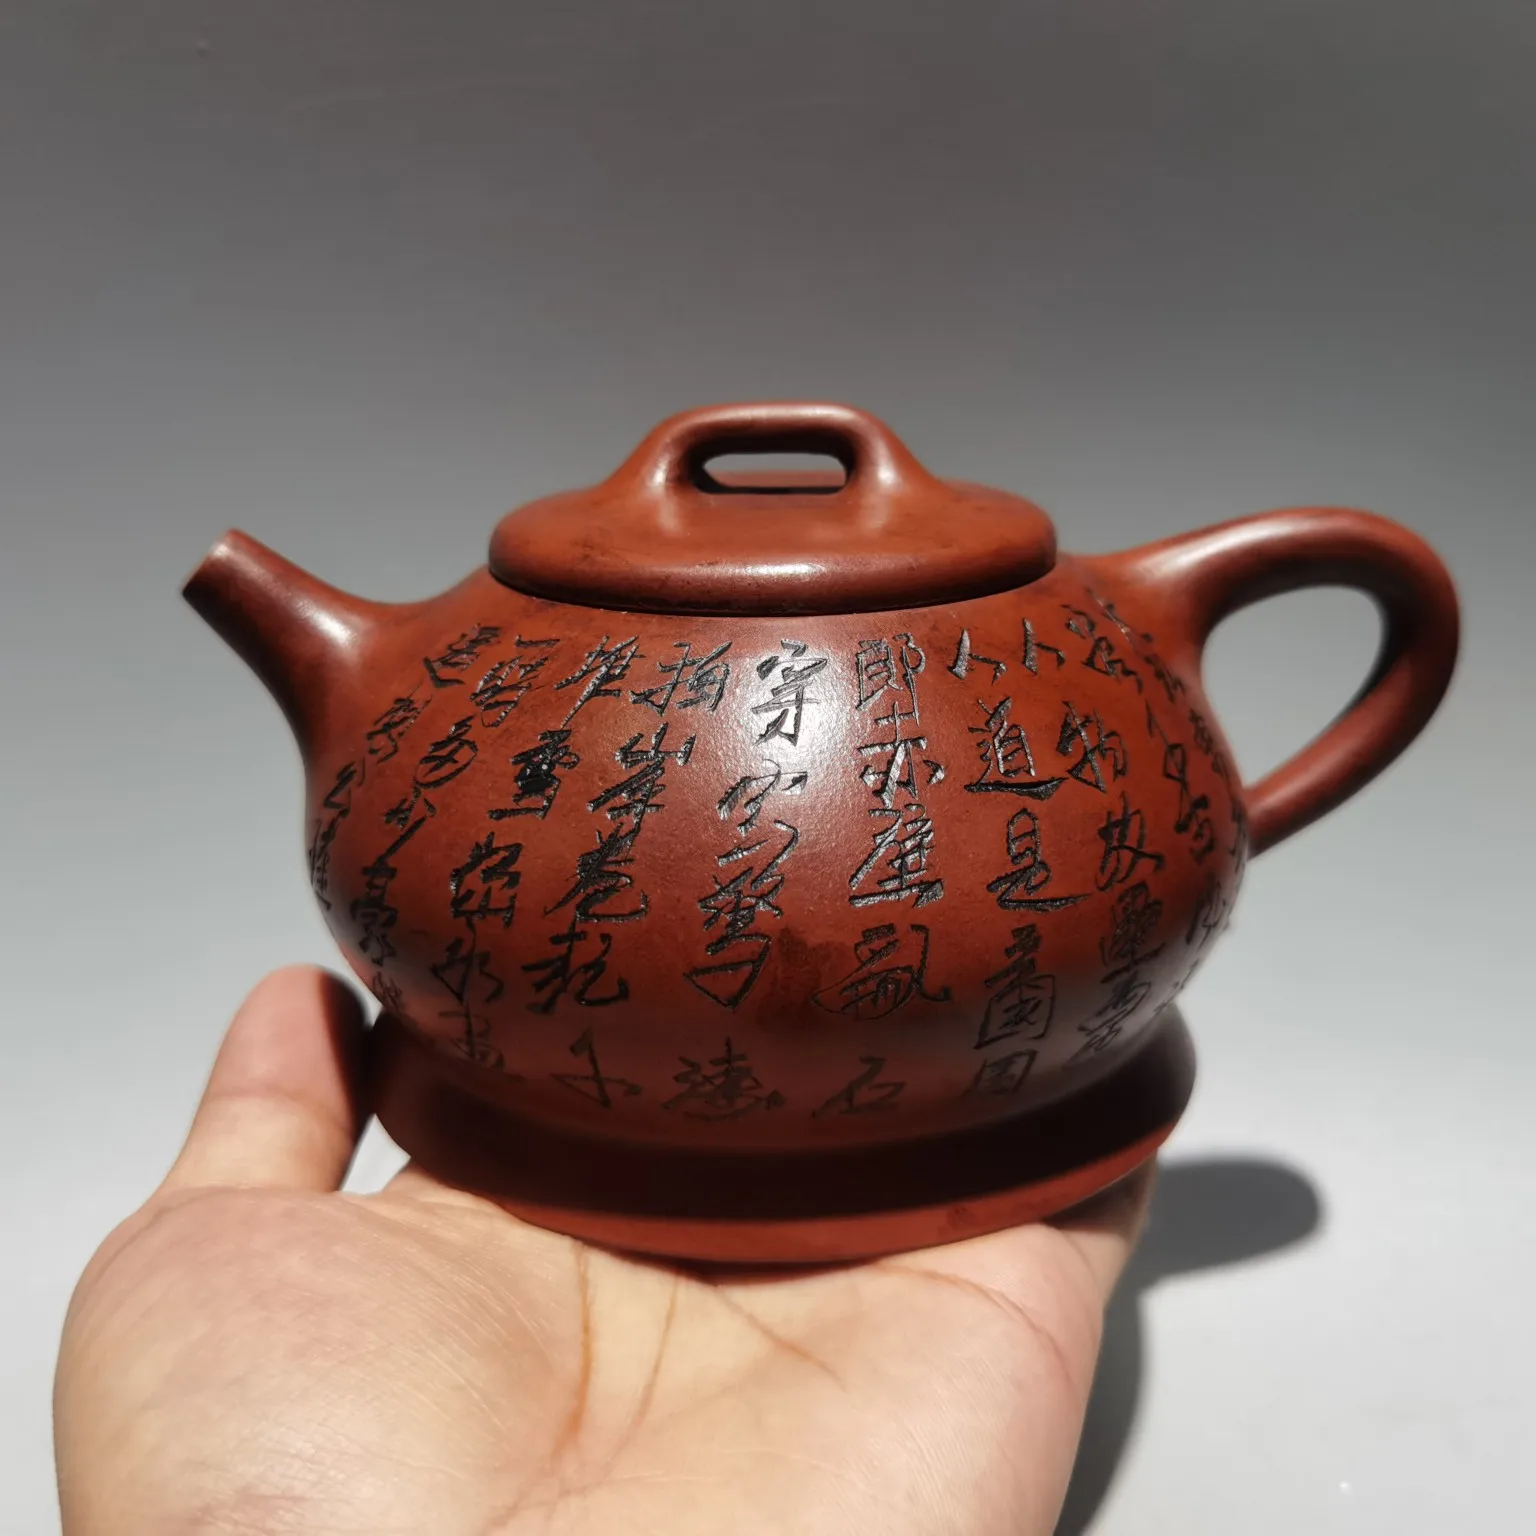 

Фарфоровый горшок Yixing Zisha 7 дюймов, посуда с надписью в виде коровьей крышки, чайник из фиолетовой глины, украшение из красной глины для сбора...